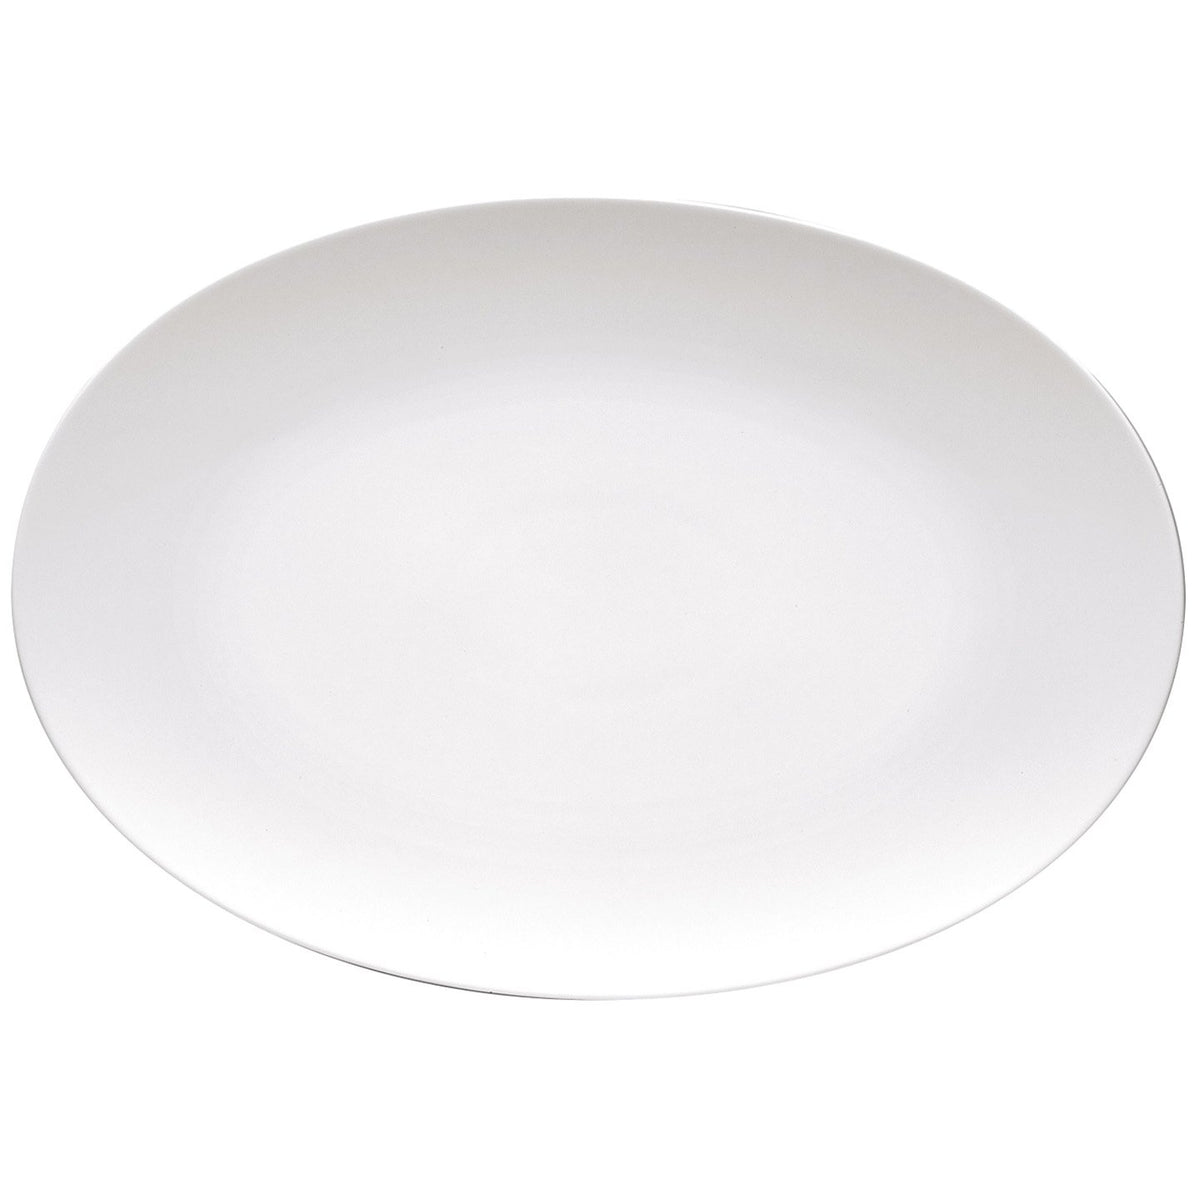 TAC 02 Oval Platter